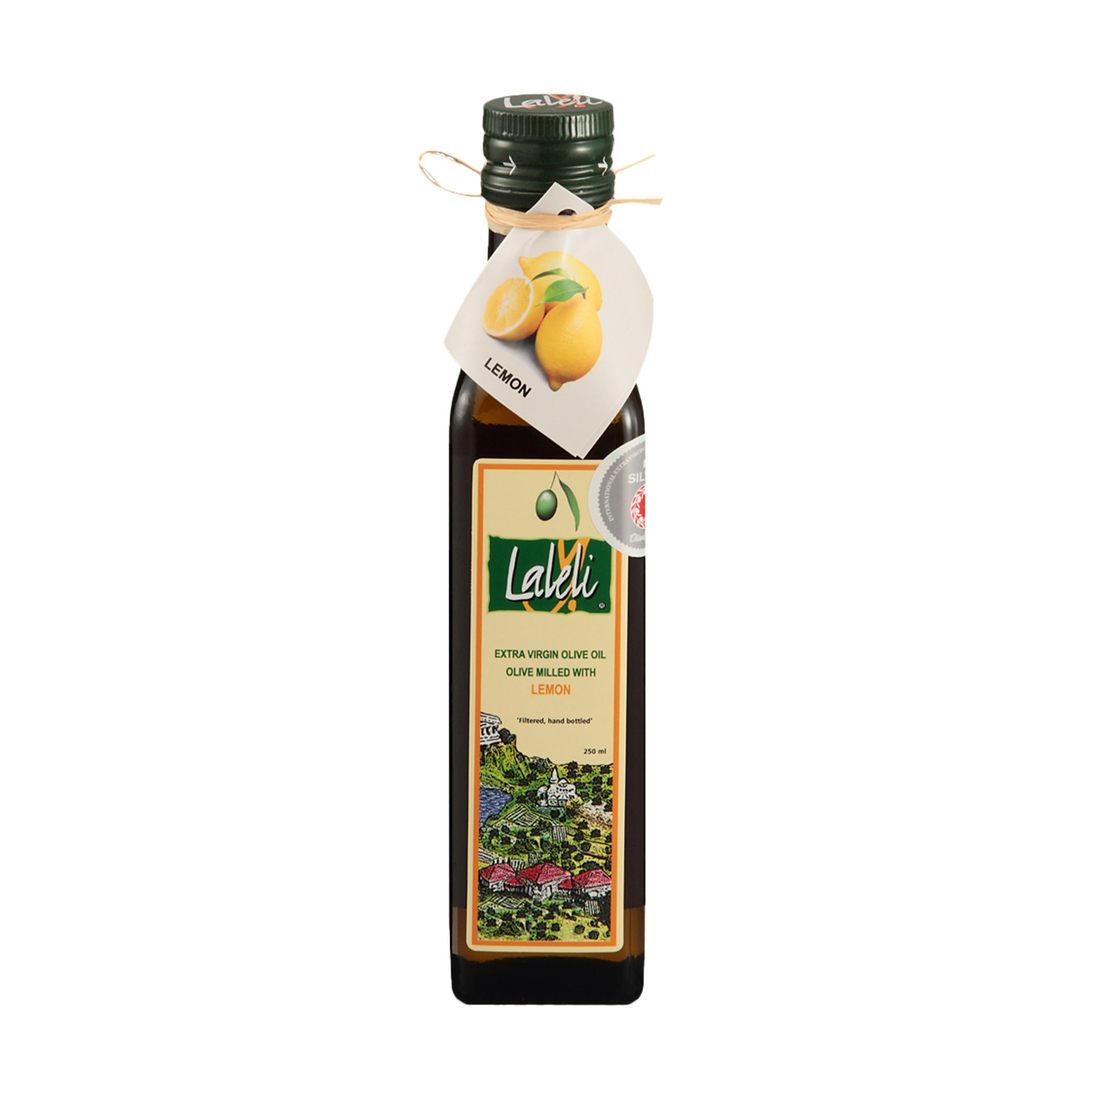 ラーレリ エキストラバージンオリーブオイル・レモン 250ml | Laleli Limon Cesnili Zeytinyagi | Extra Virgin Olive Oil Milled with Lemon